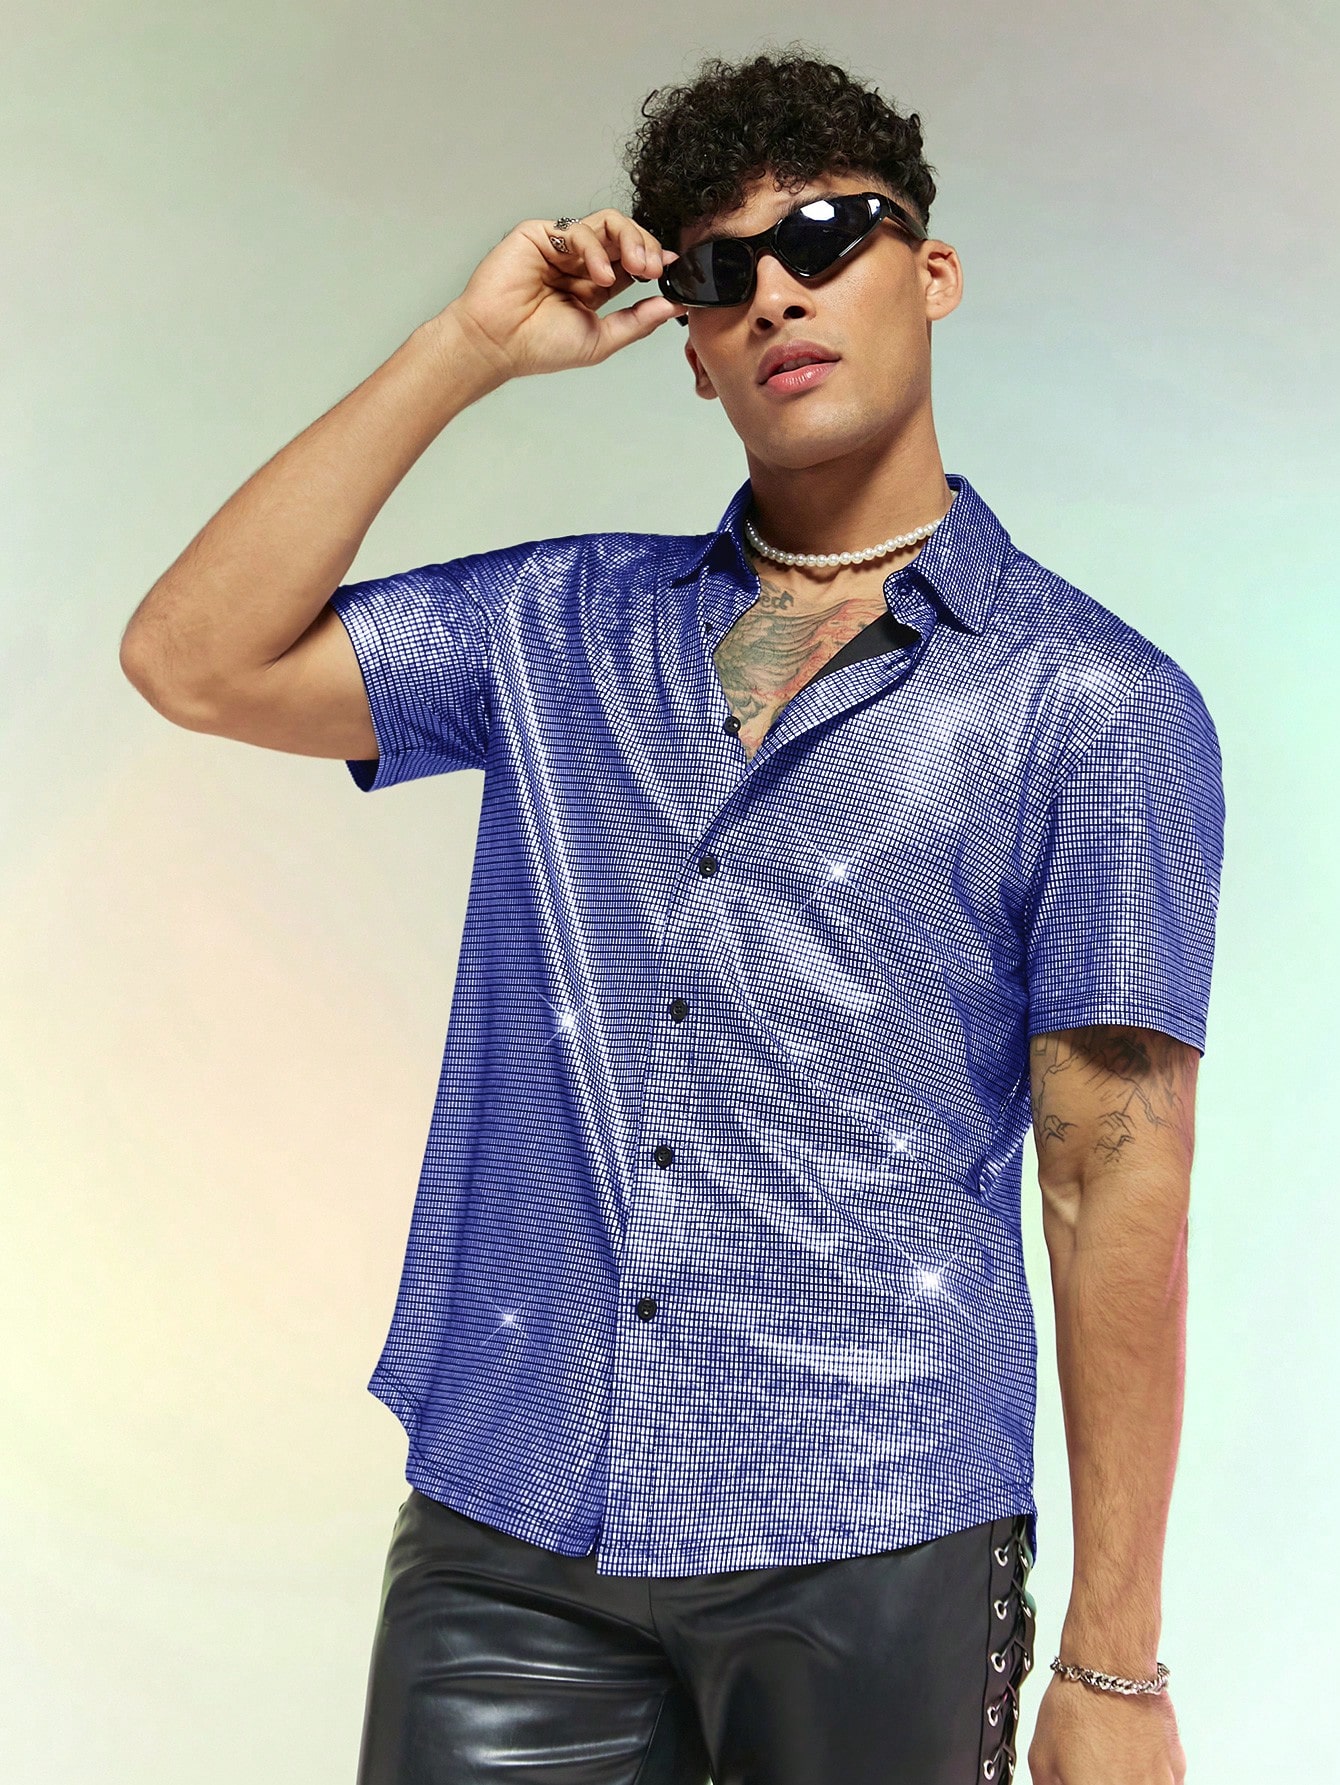 Мужская тканая рубашка с короткими рукавами Manfinity AFTRDRK с металлизированной текстурой, синий мужская повседневная тканая рубашка с длинными рукавами и рюшами manfinity aftrdrk коричневый